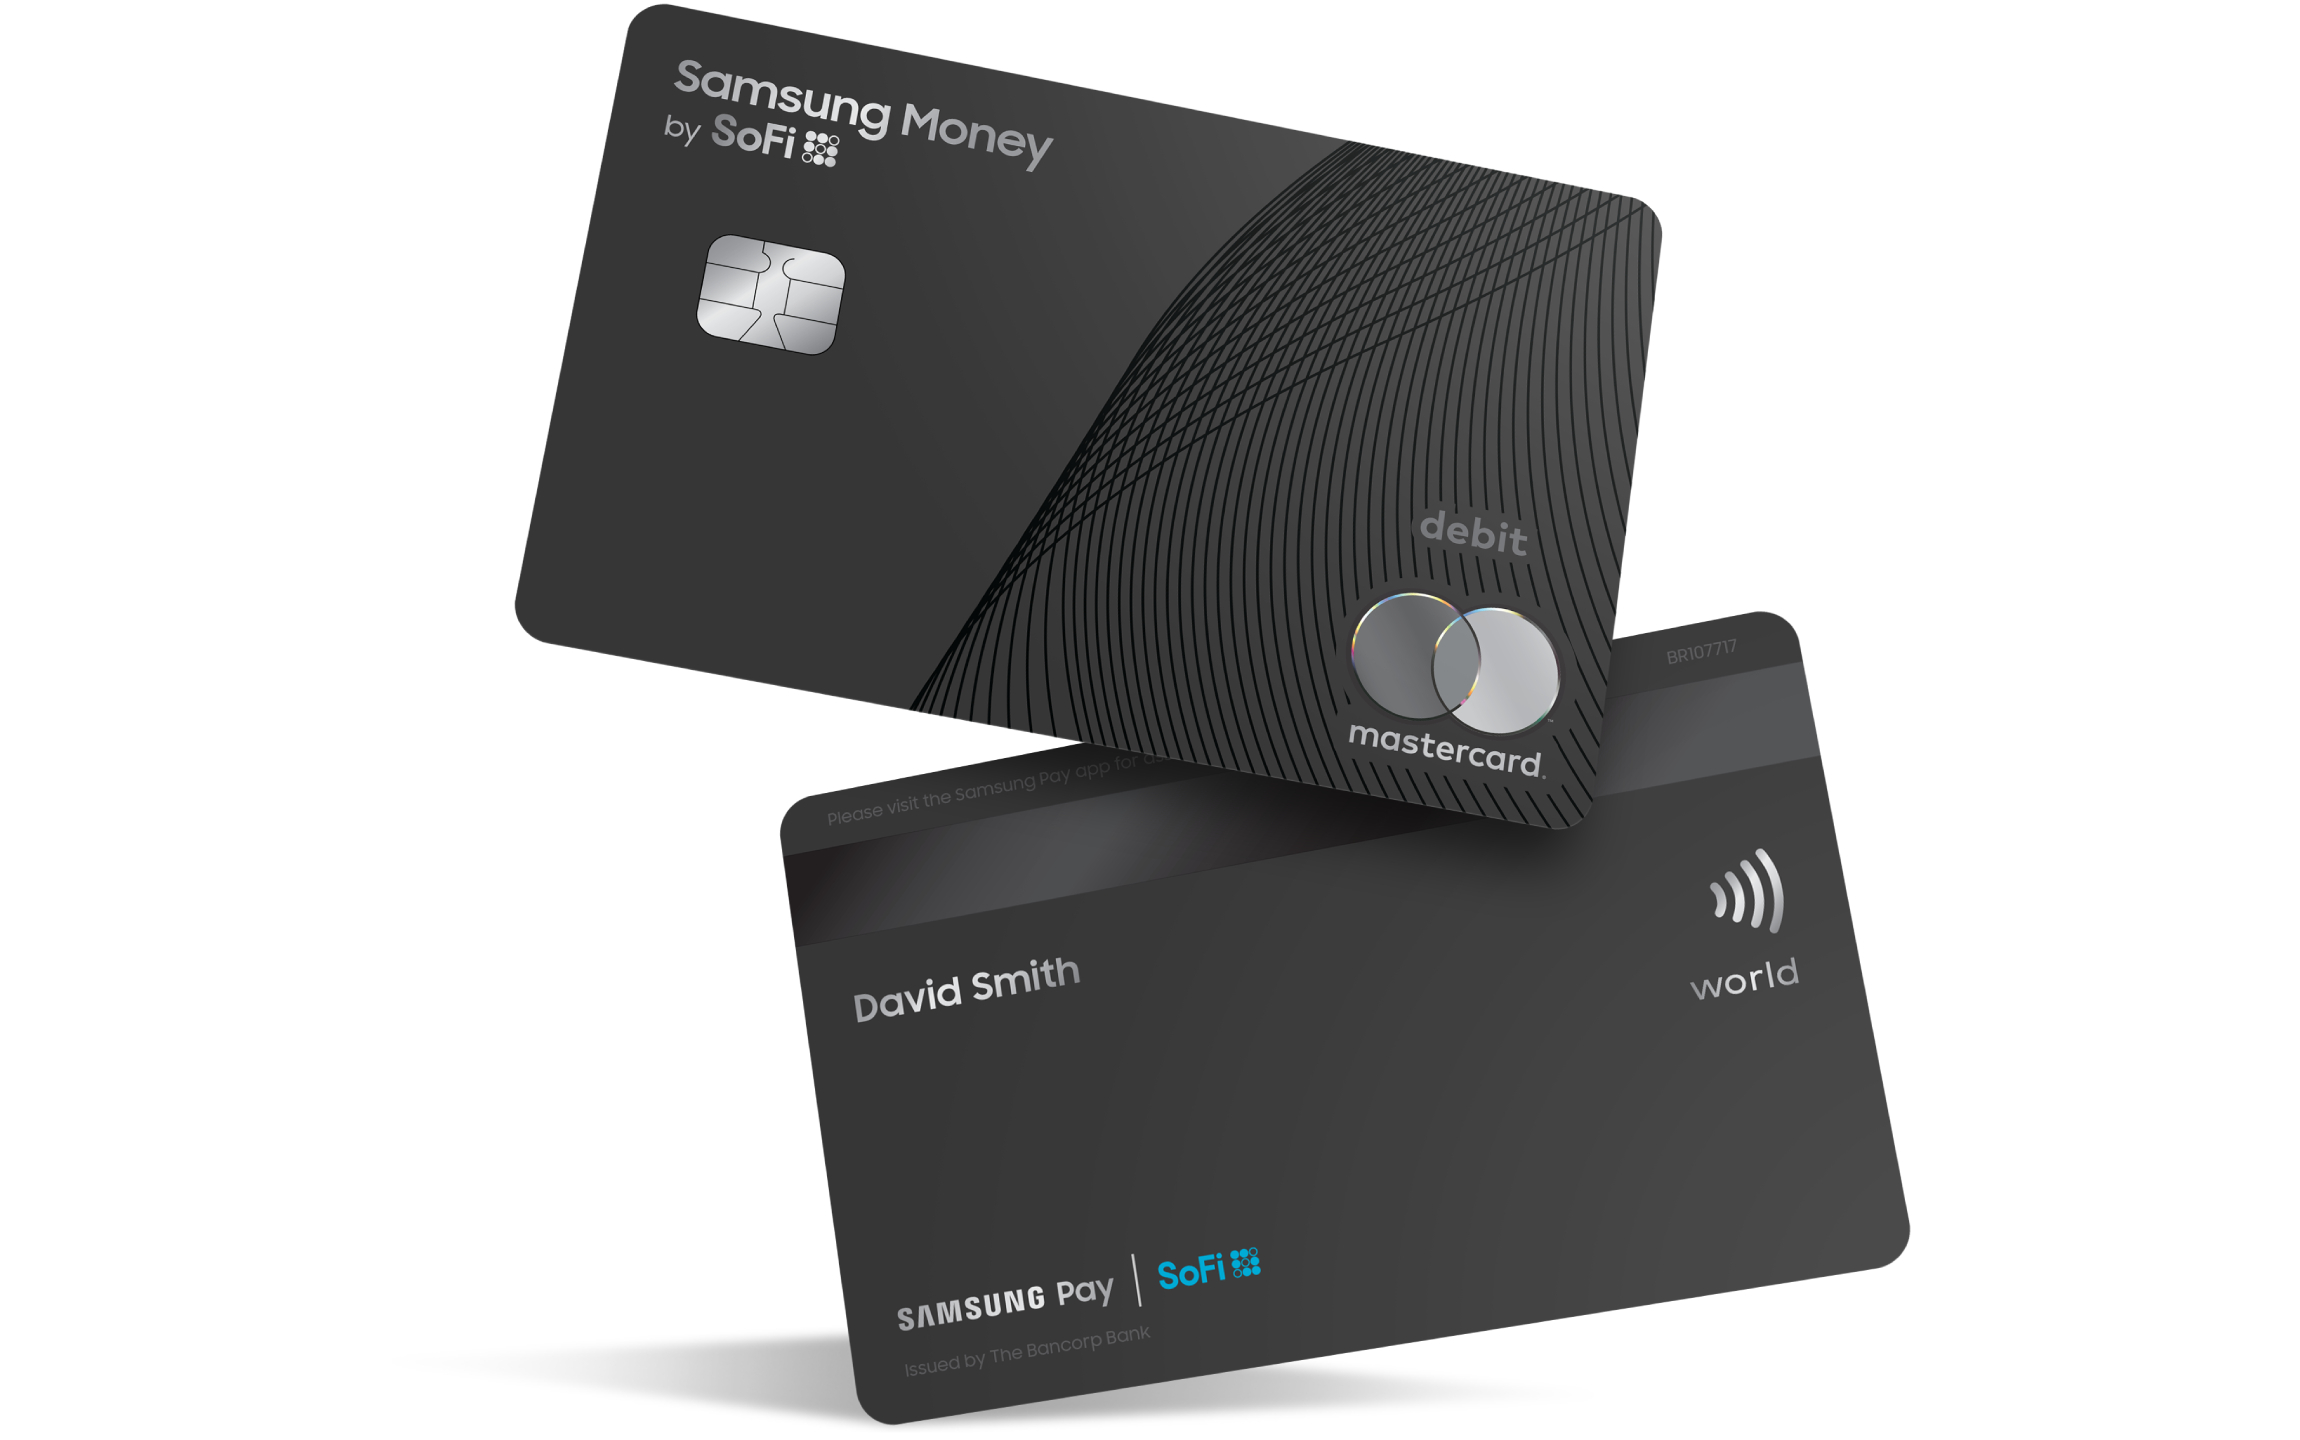 Os clientes poderão pedir um cartão da Samsung com bandeira MasterCard